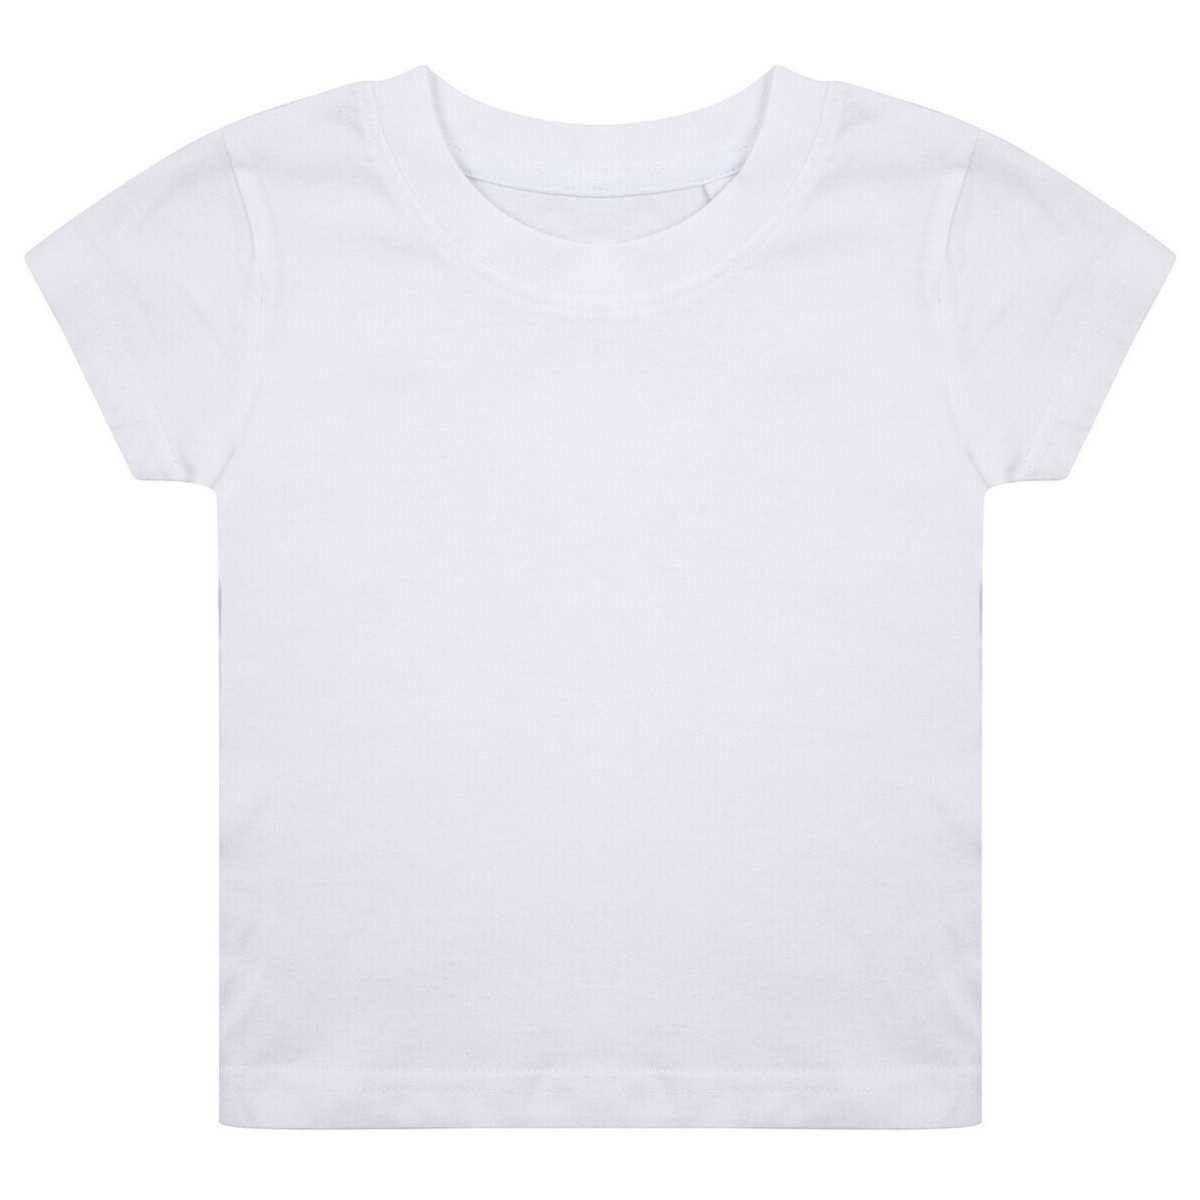 textil Niños Camisetas manga corta Larkwood LW620 Blanco